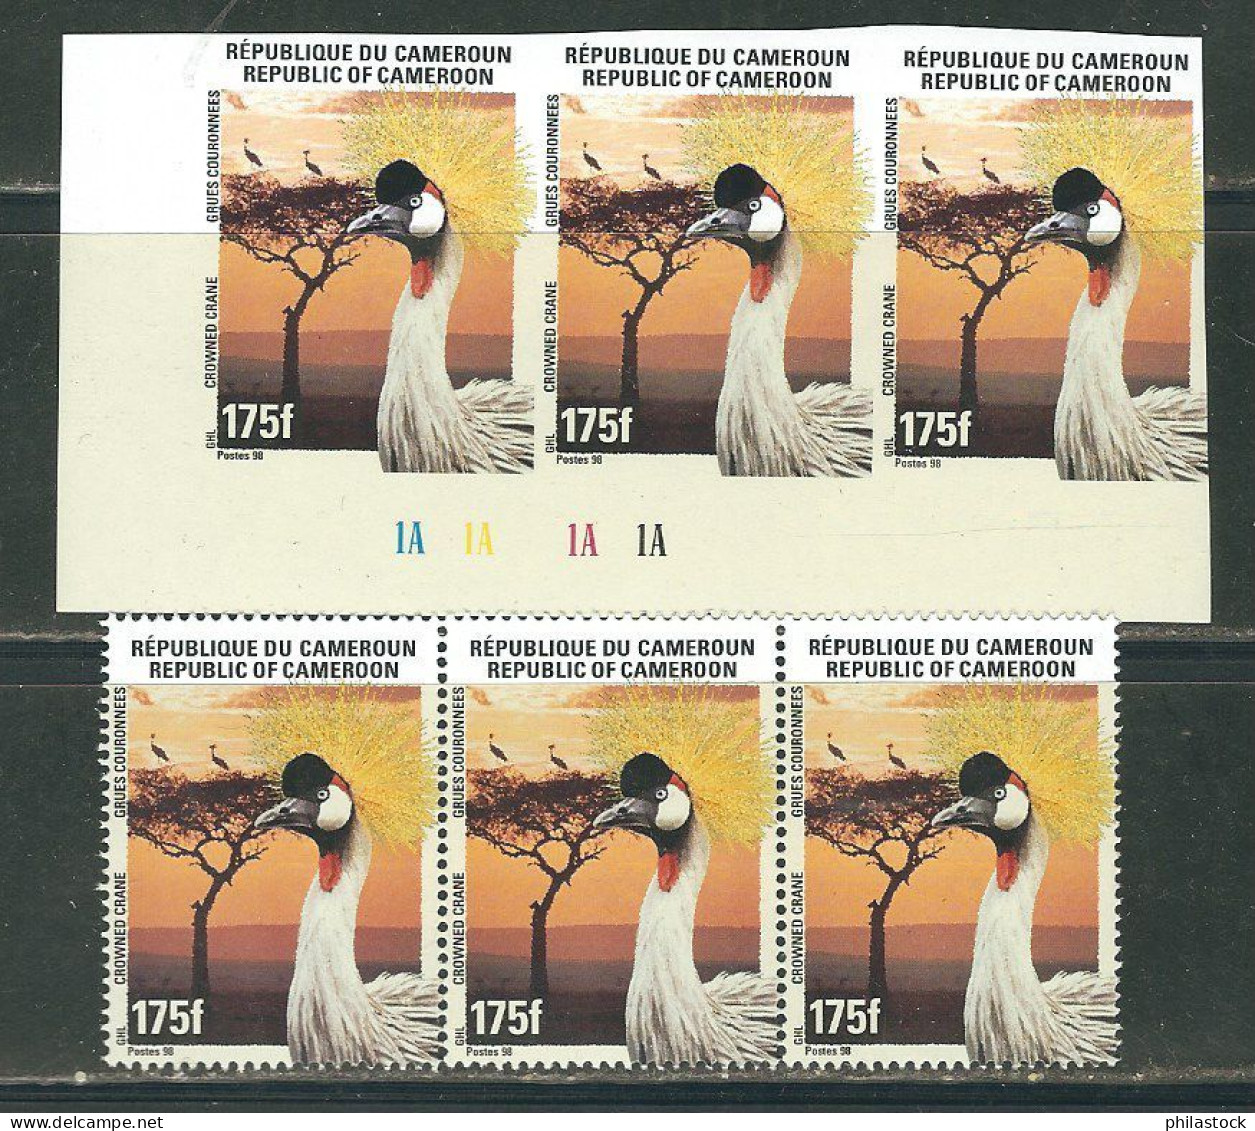 CAMEROUN Lot de timbres poste,+ BF + non-dentelés & épreuves d'artiste dans un classeur du ministère des Postes cameroun